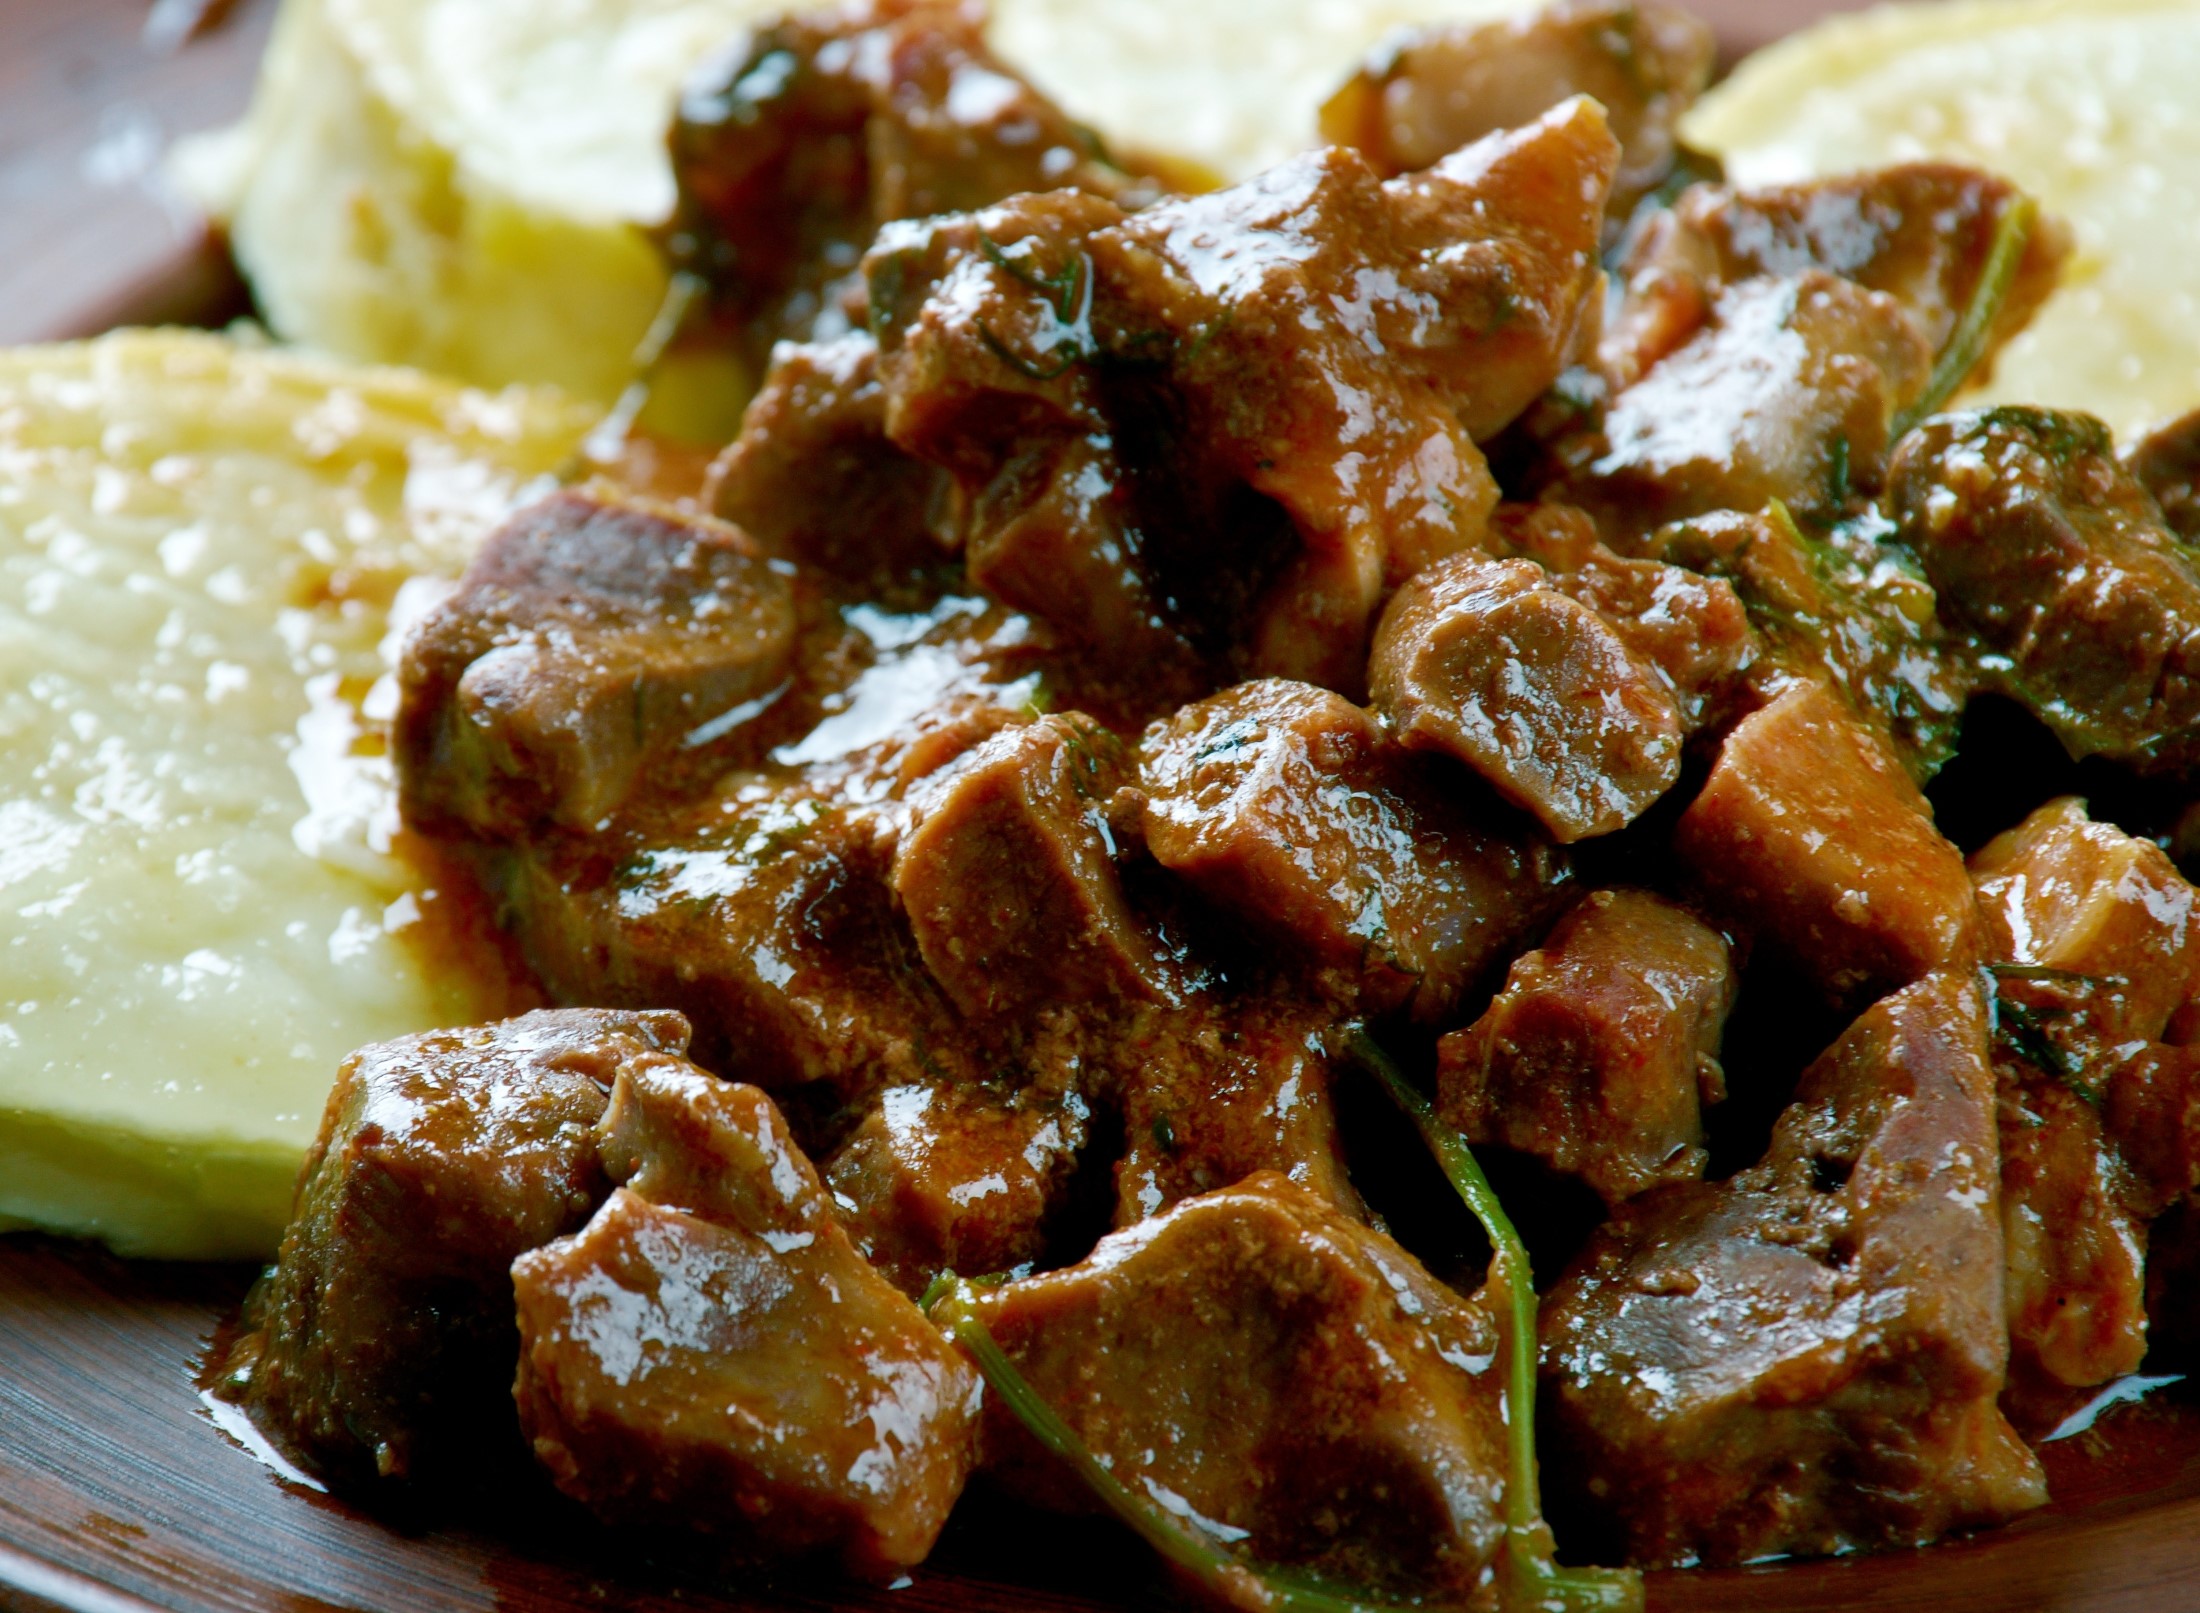 Griot – Haitańska Smażona Wieprzowina, popularne danie mięsne